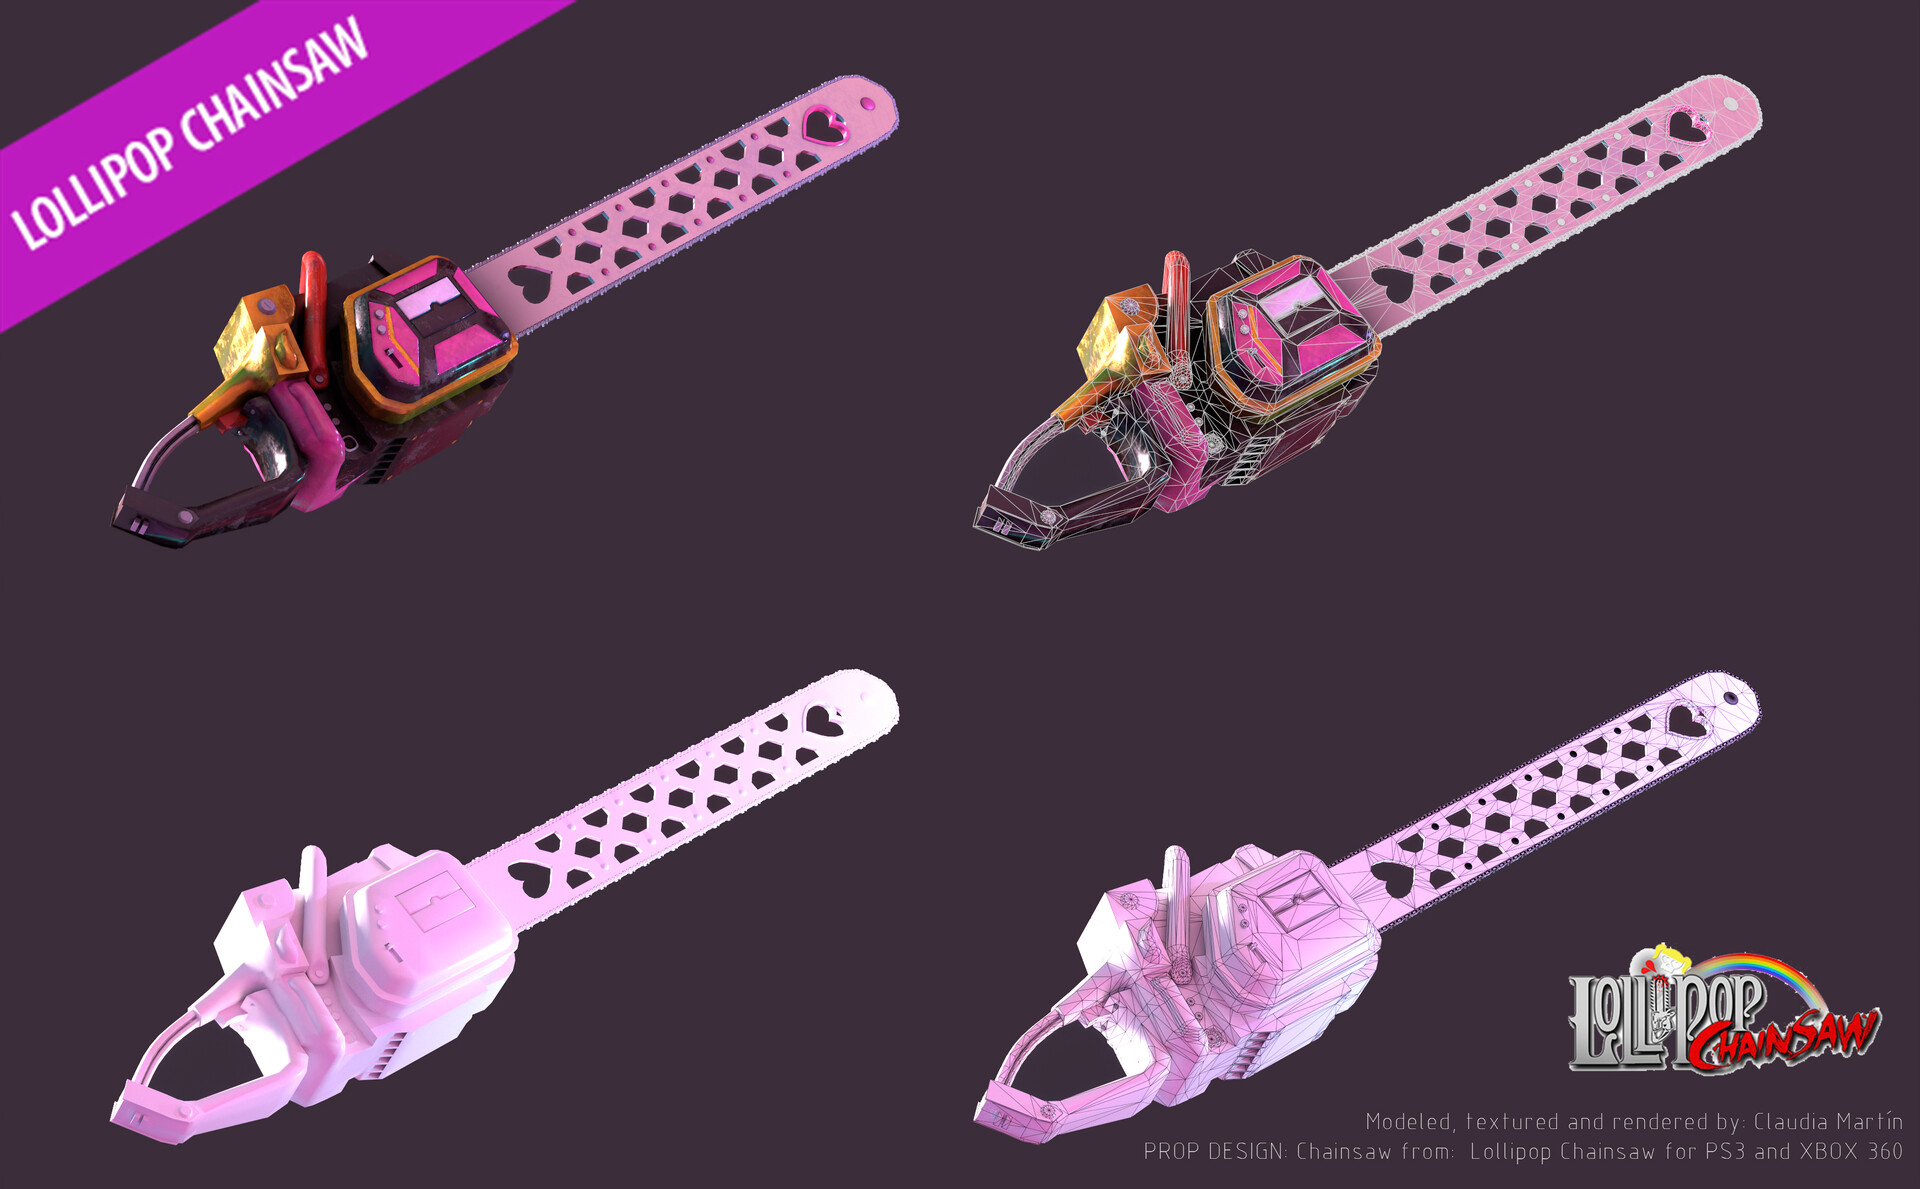 Qenoxis Design on X: Steam Artwork Design - Lollipop Chainsaw by